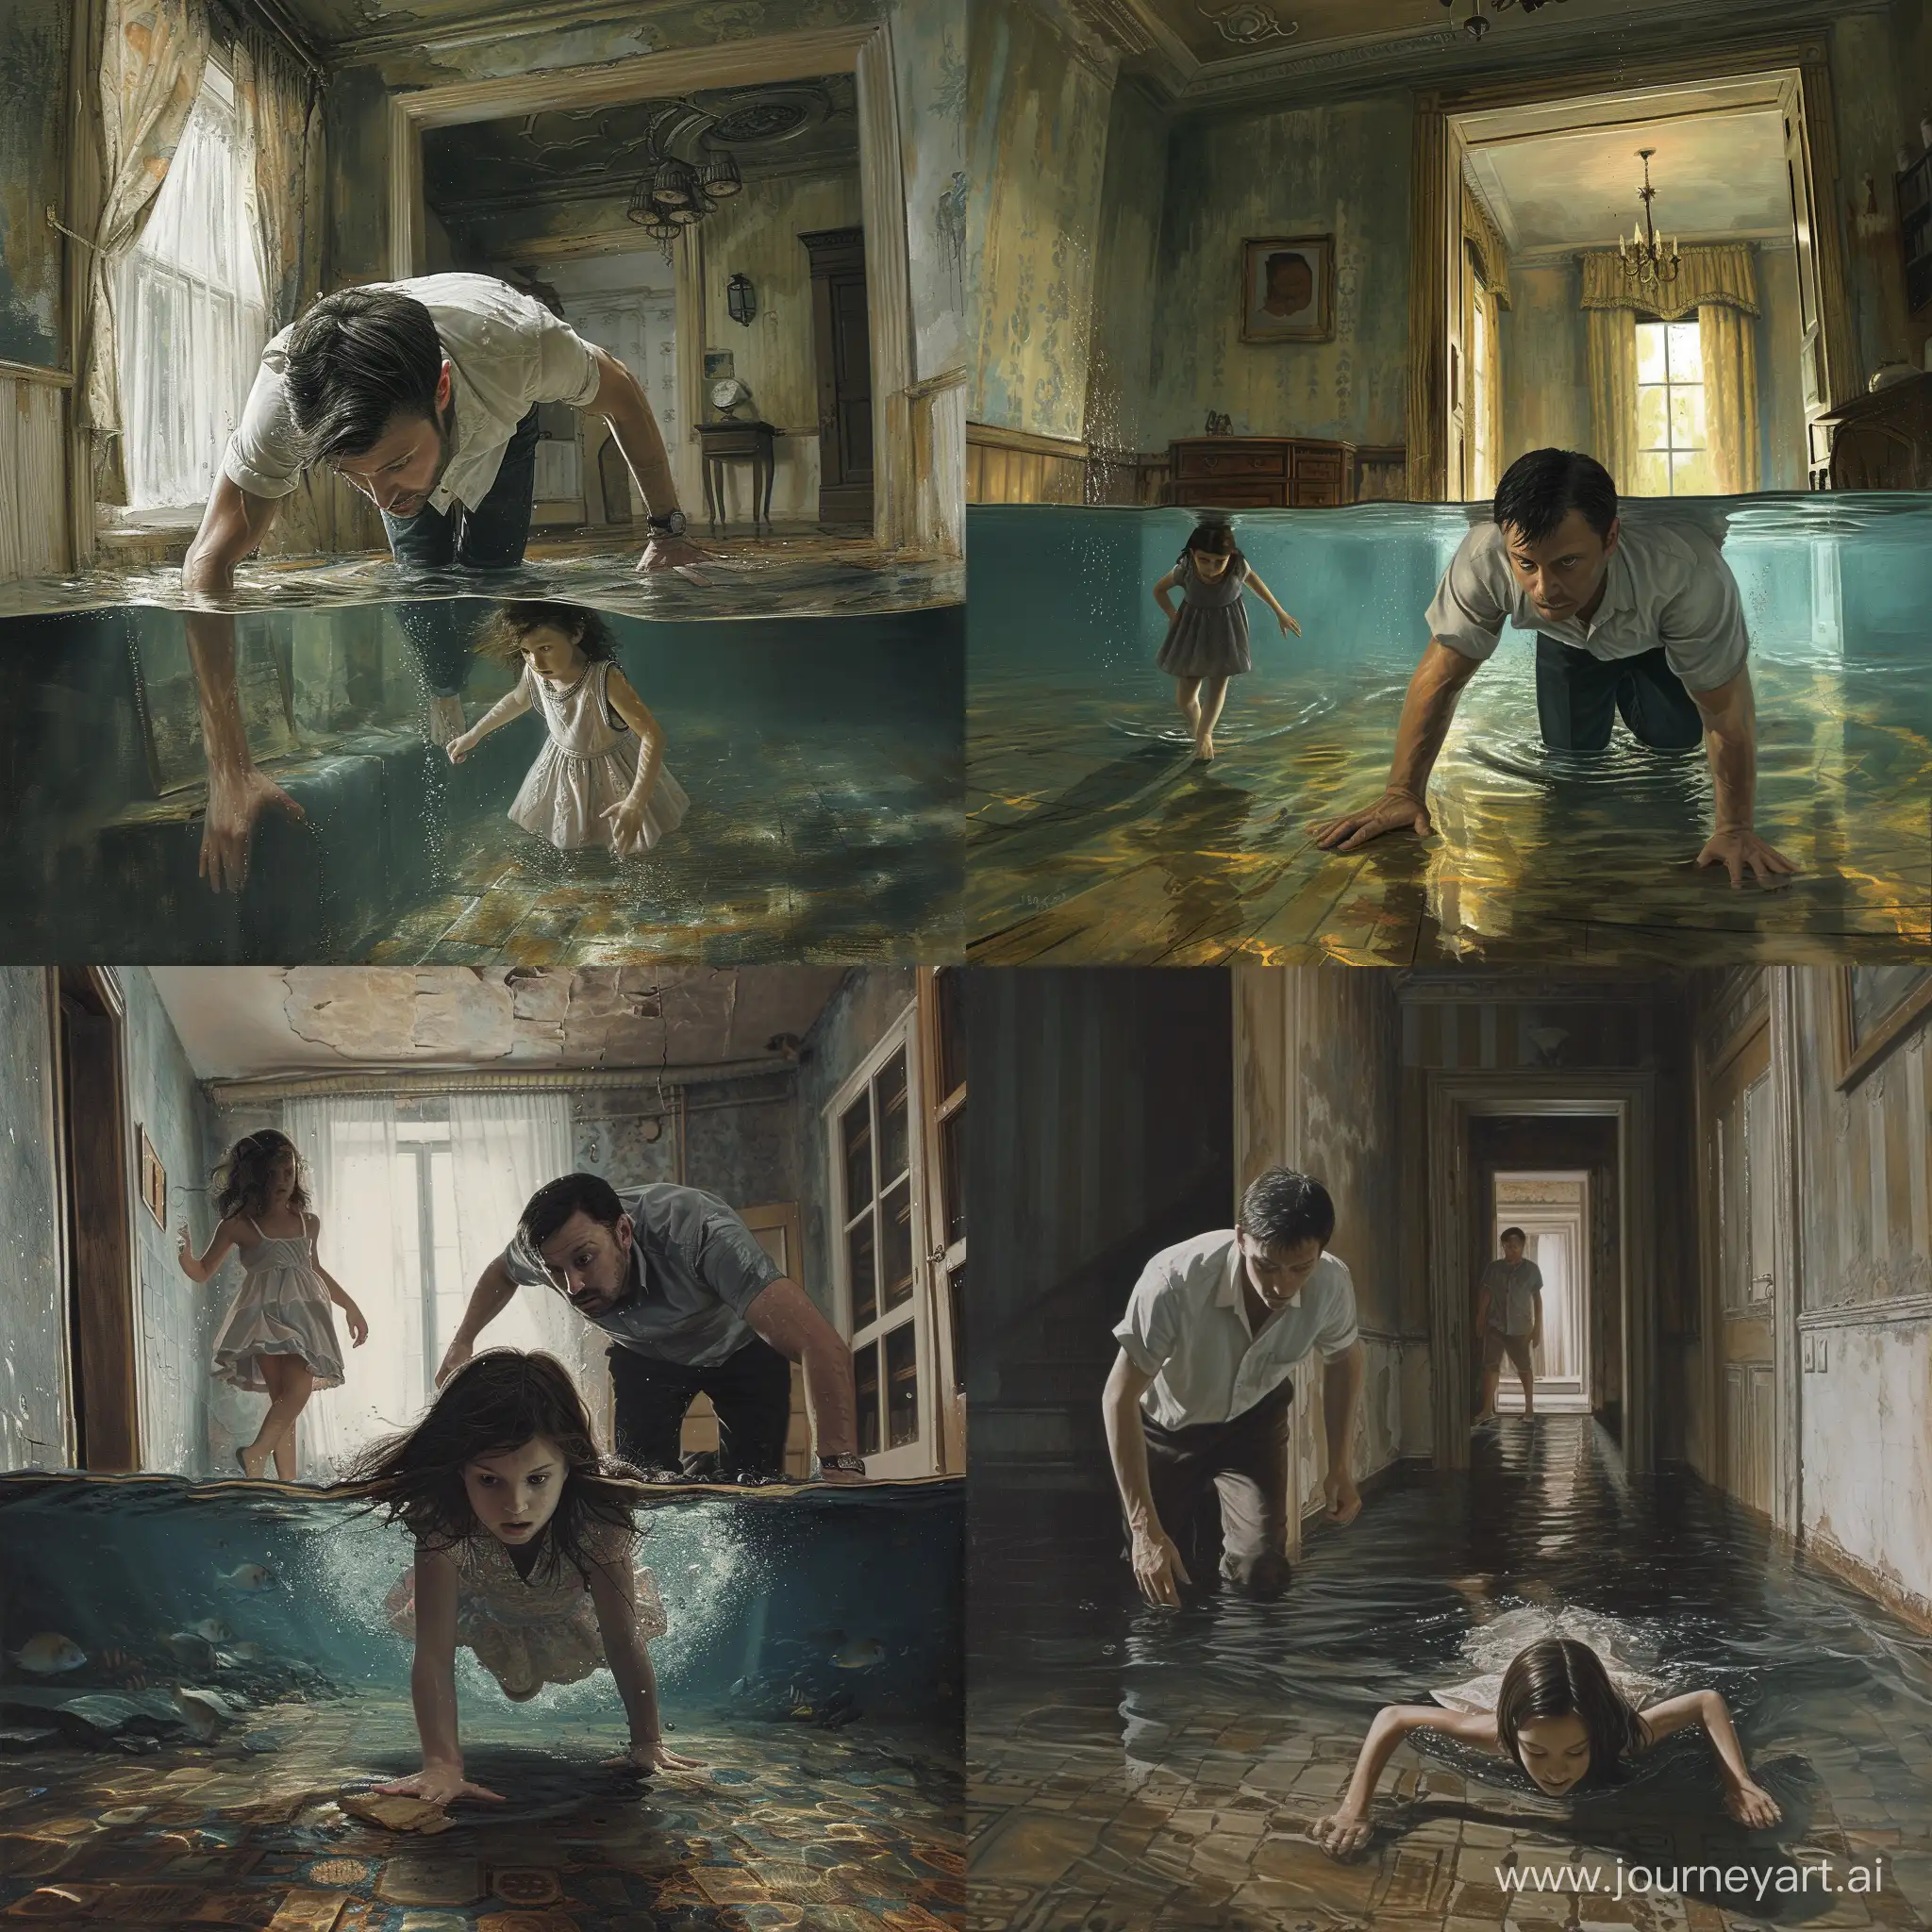 мужчина ползет за ползущей десятилетней девочкой по полу под водой. интерьеры старинного дома.
живопись